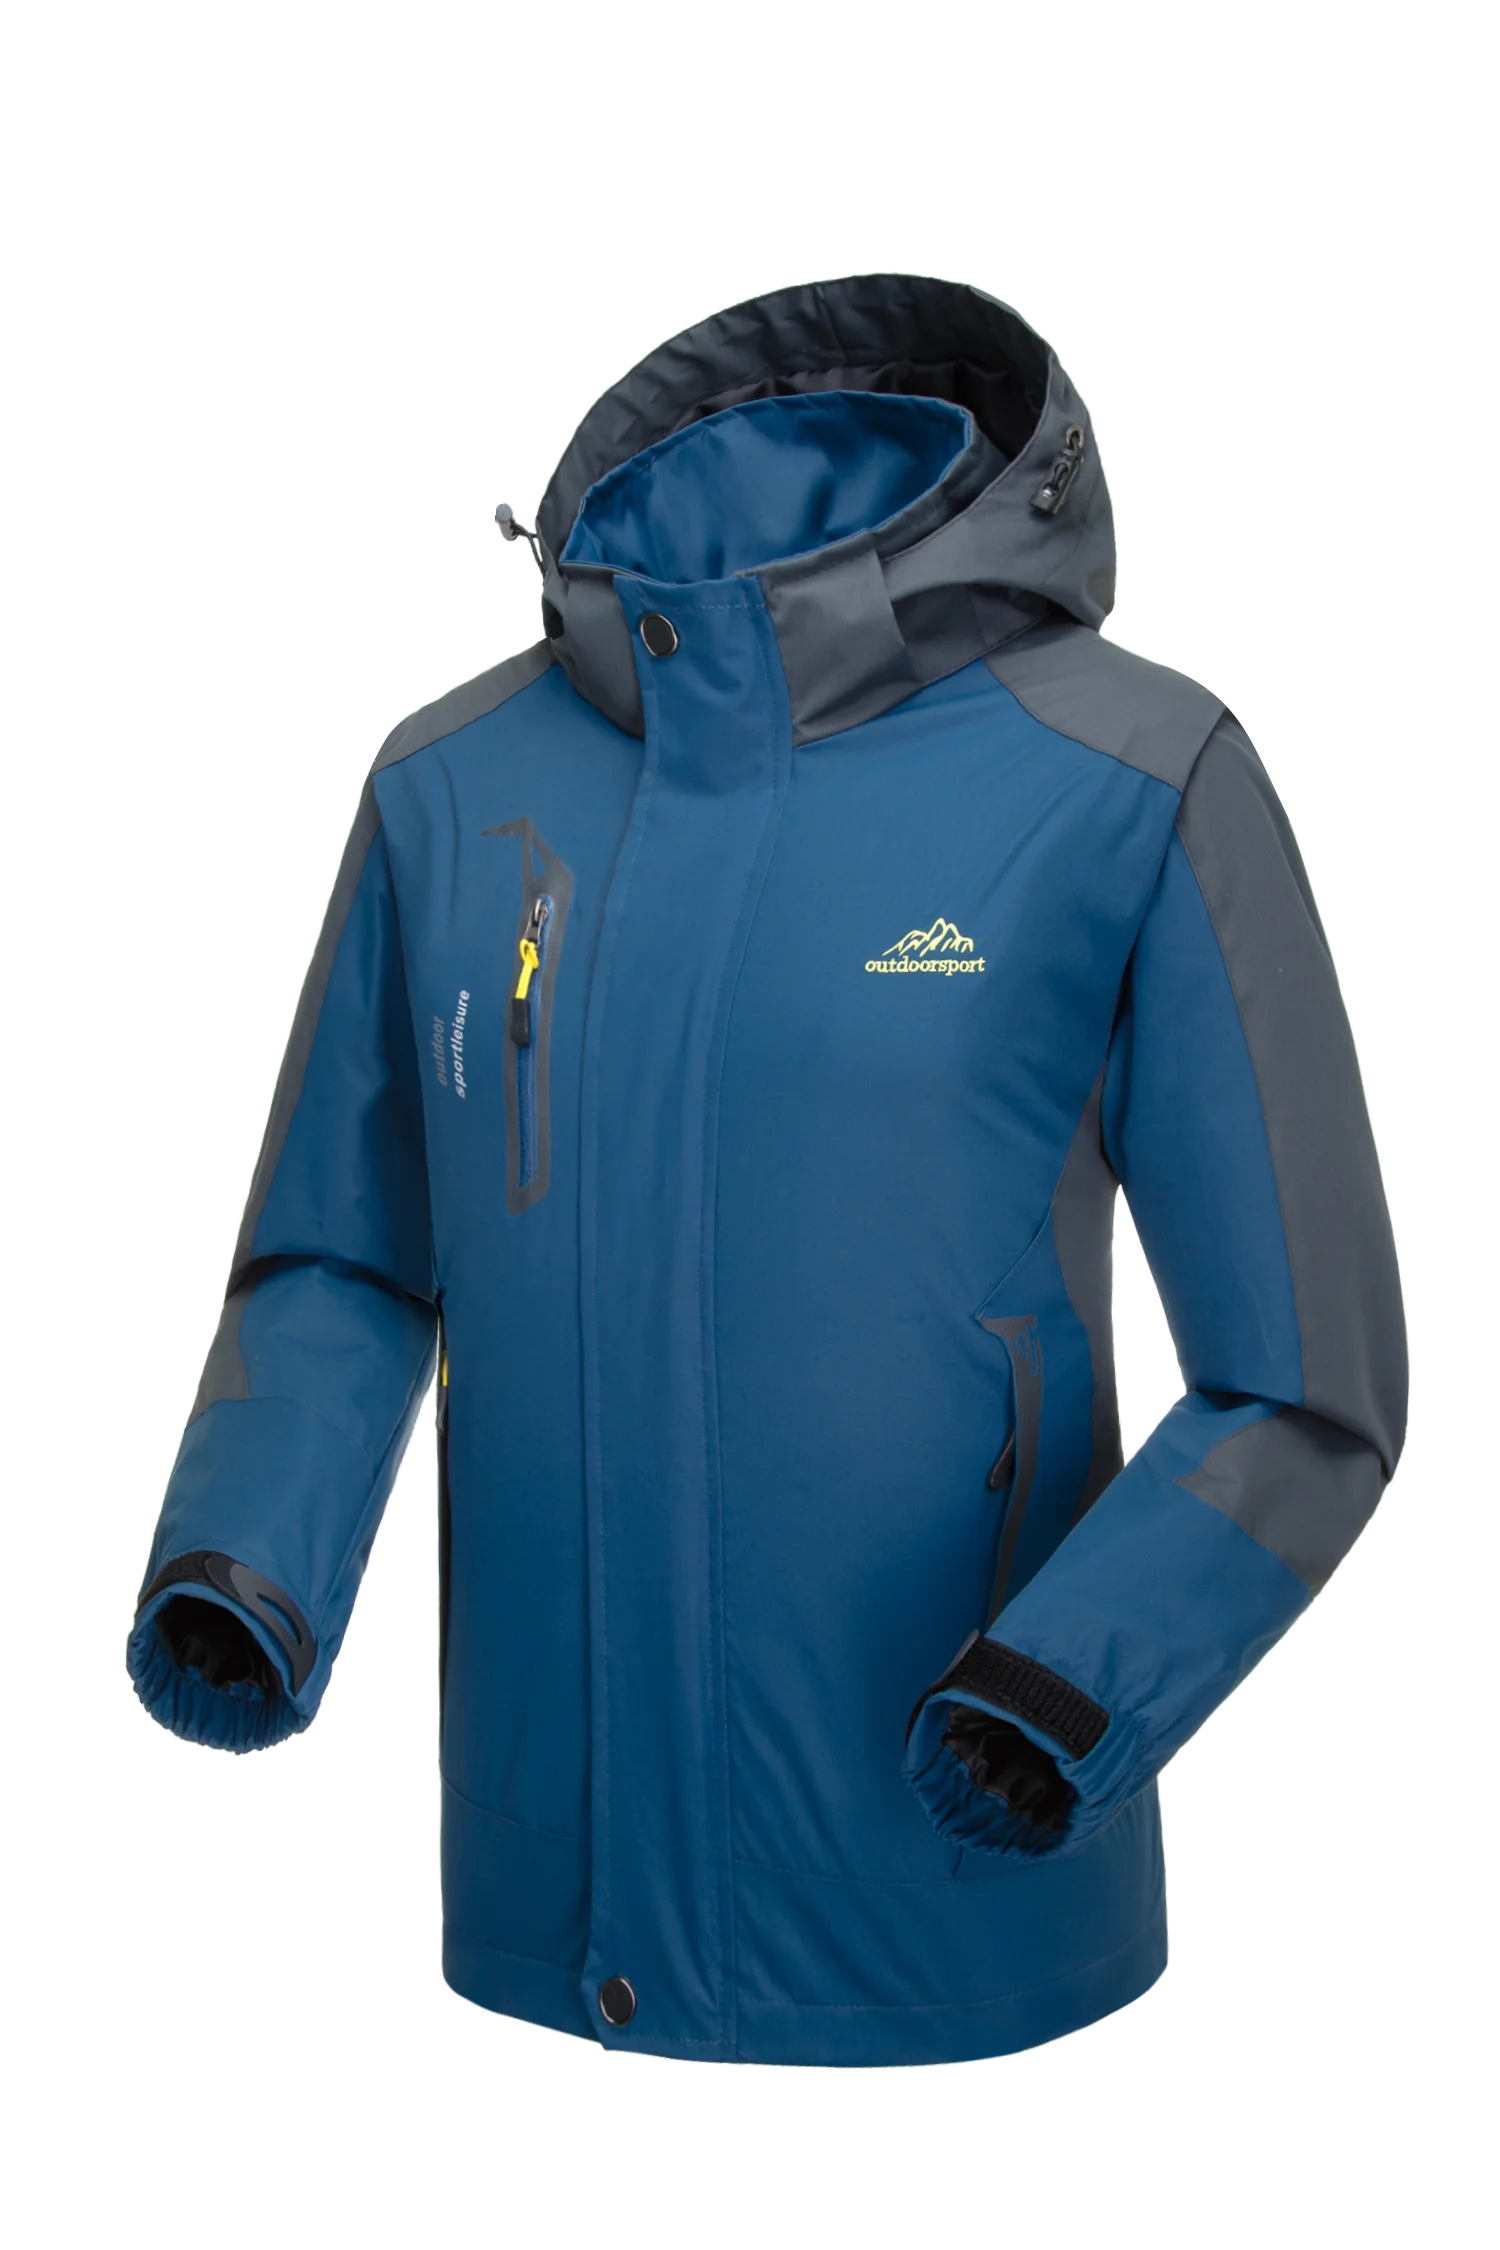 Флисовая походная куртка, зимнее пальто, Мужская Флисовая Куртка, водонепроницаемая куртка для катания на лыжах, ветрозащитная куртка для альпинизма, рыбалки